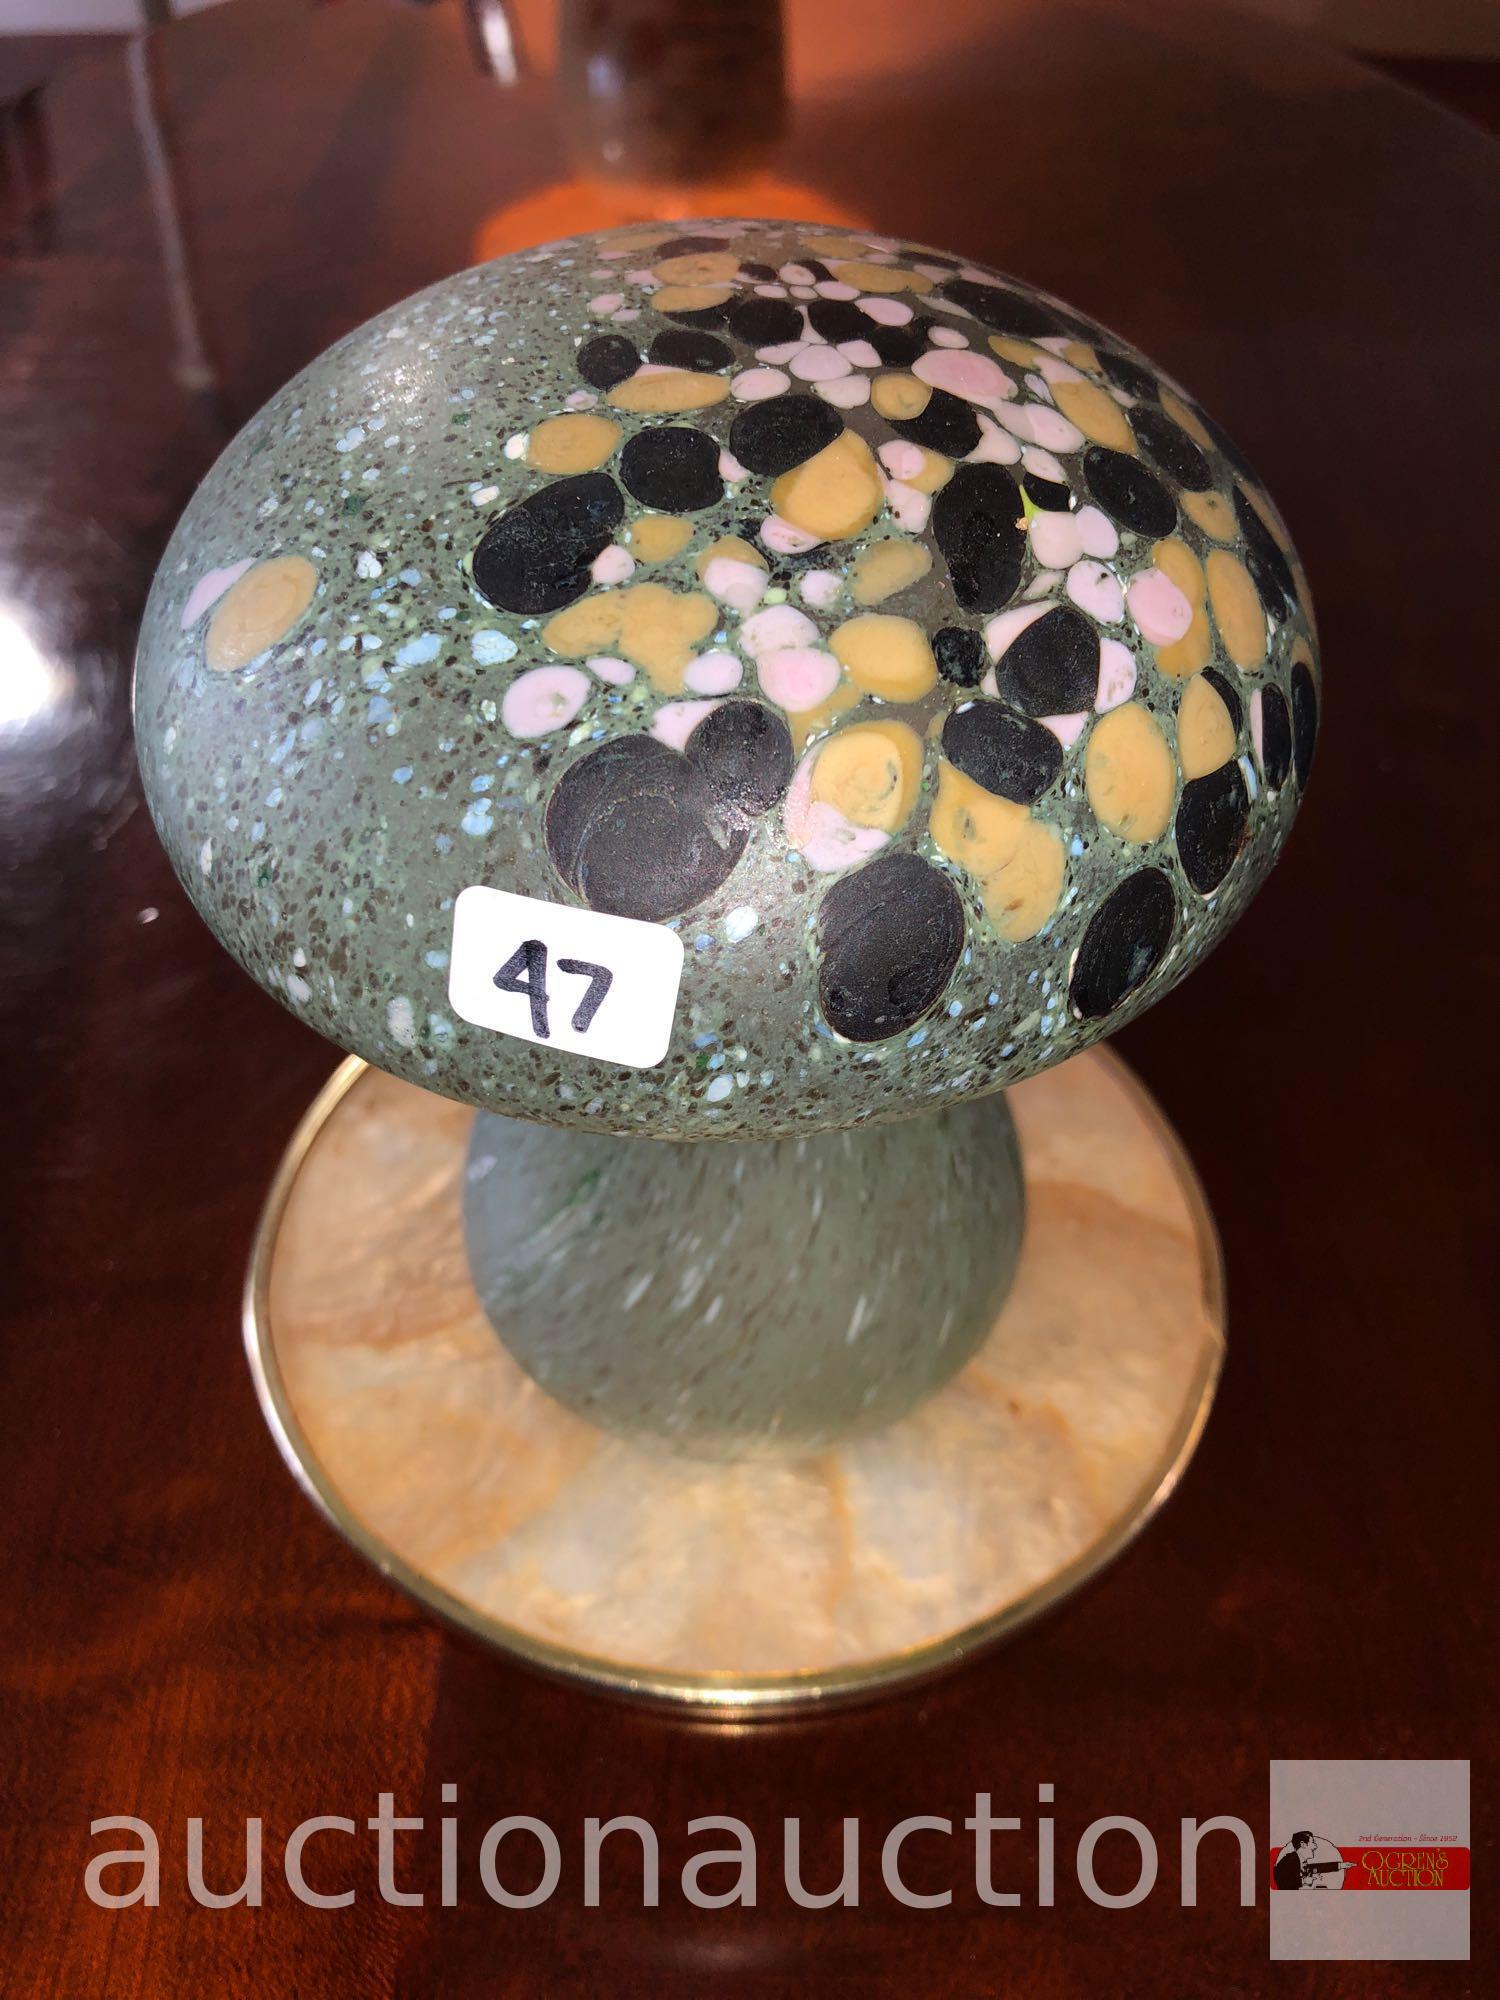 Art glass - Handmade Boda mushroom paperweight, Sweden, 5"wx6"h